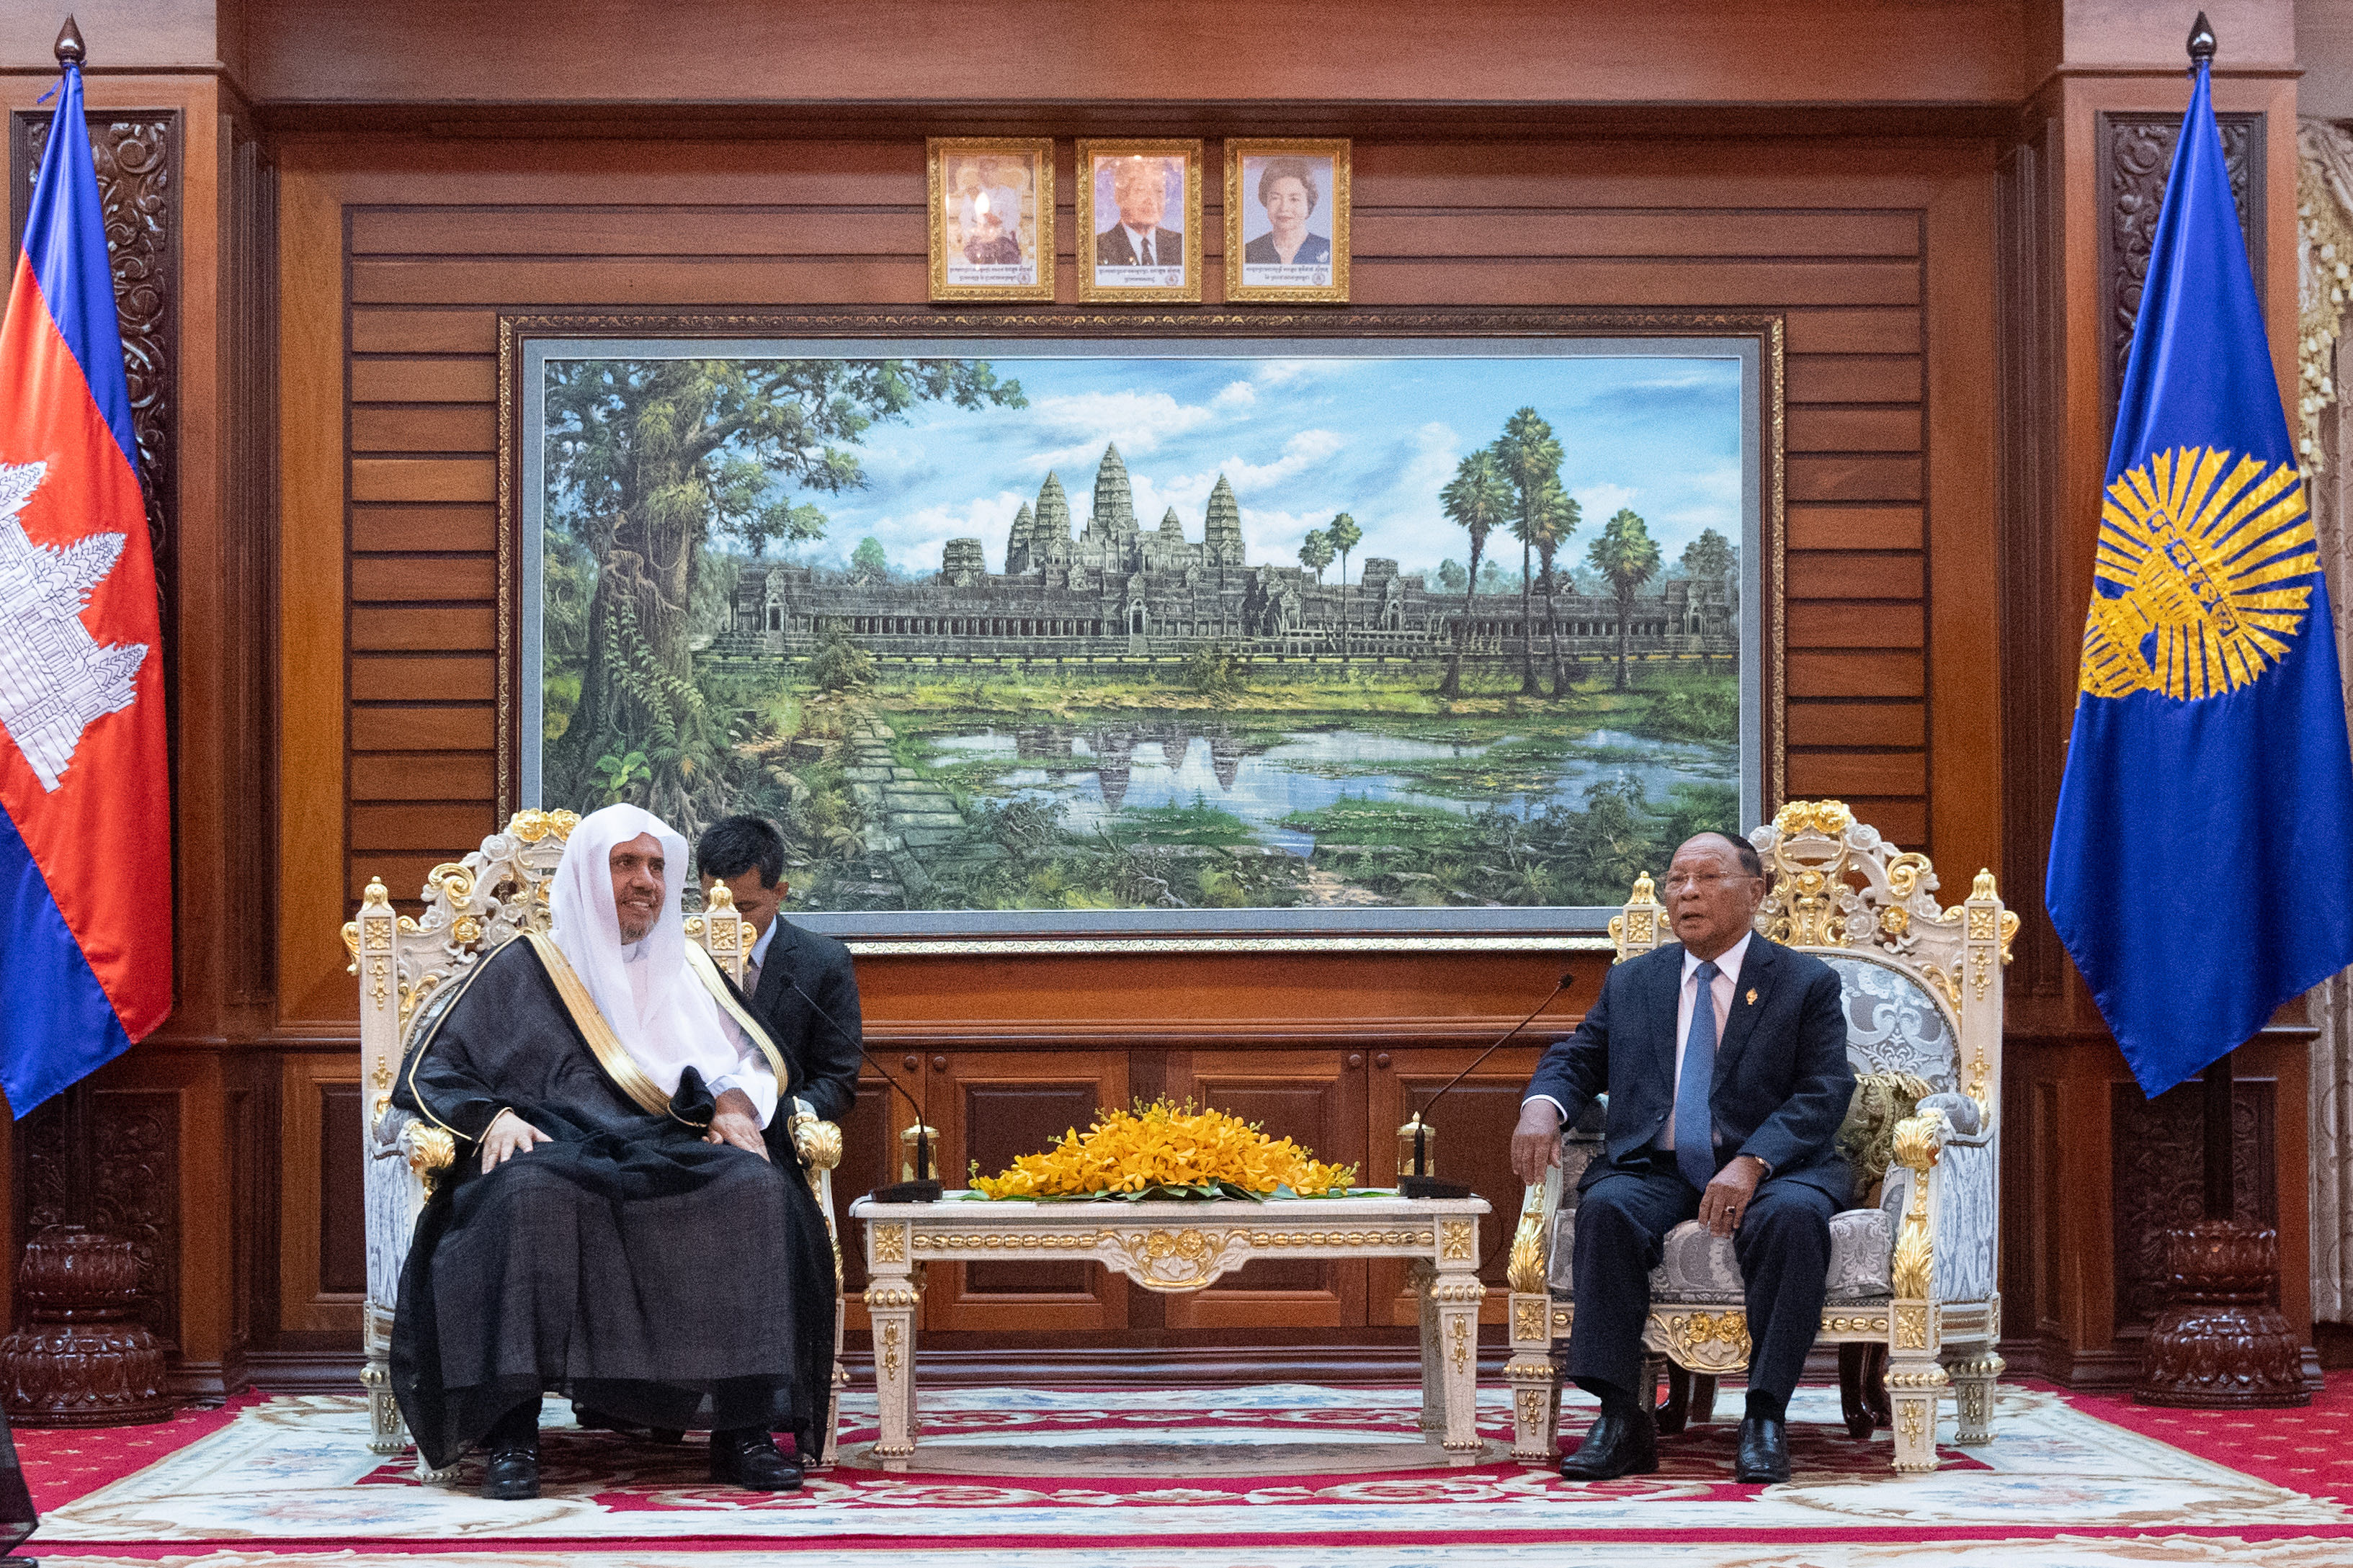 Le Parlement cambodgien a reçu Mohammad Alissa qui a été félicité par son président Mr Rin pour ses efforts dans la promotion de l’harmonie à travers le monde ; il lui a également confirmé que la composante islamique est une composante cambodgienne à part entière